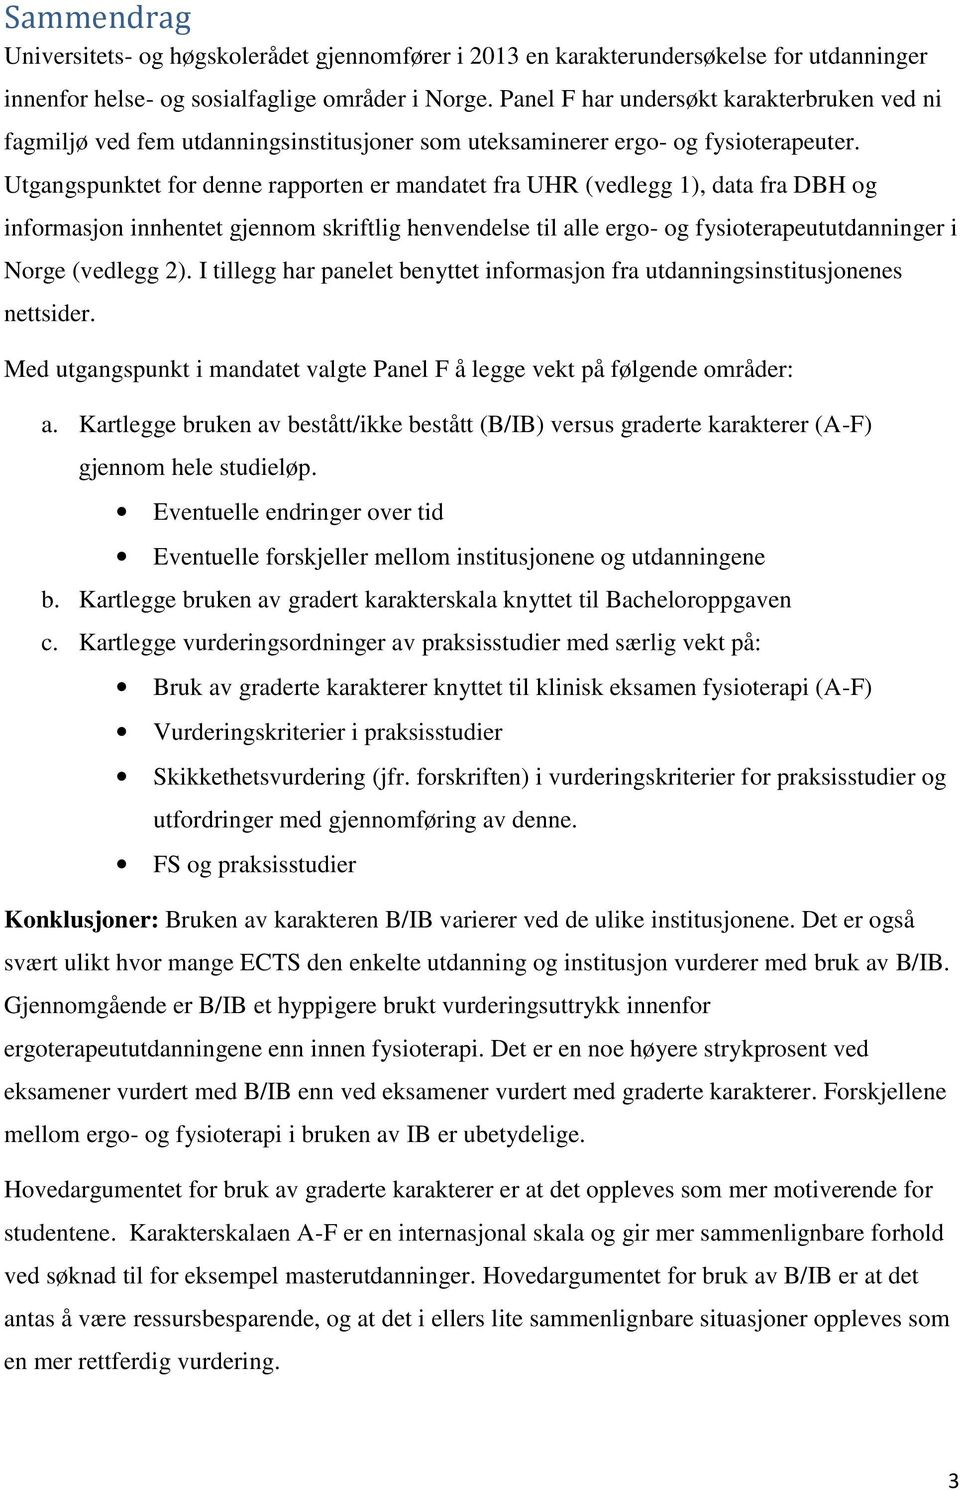 Utgangspunktet for denne rapporten er mandatet fra UHR (vedlegg 1), data fra DBH og informasjon innhentet gjennom skriftlig henvendelse til alle ergo- og fysioterapeututdanninger i Norge (vedlegg 2).